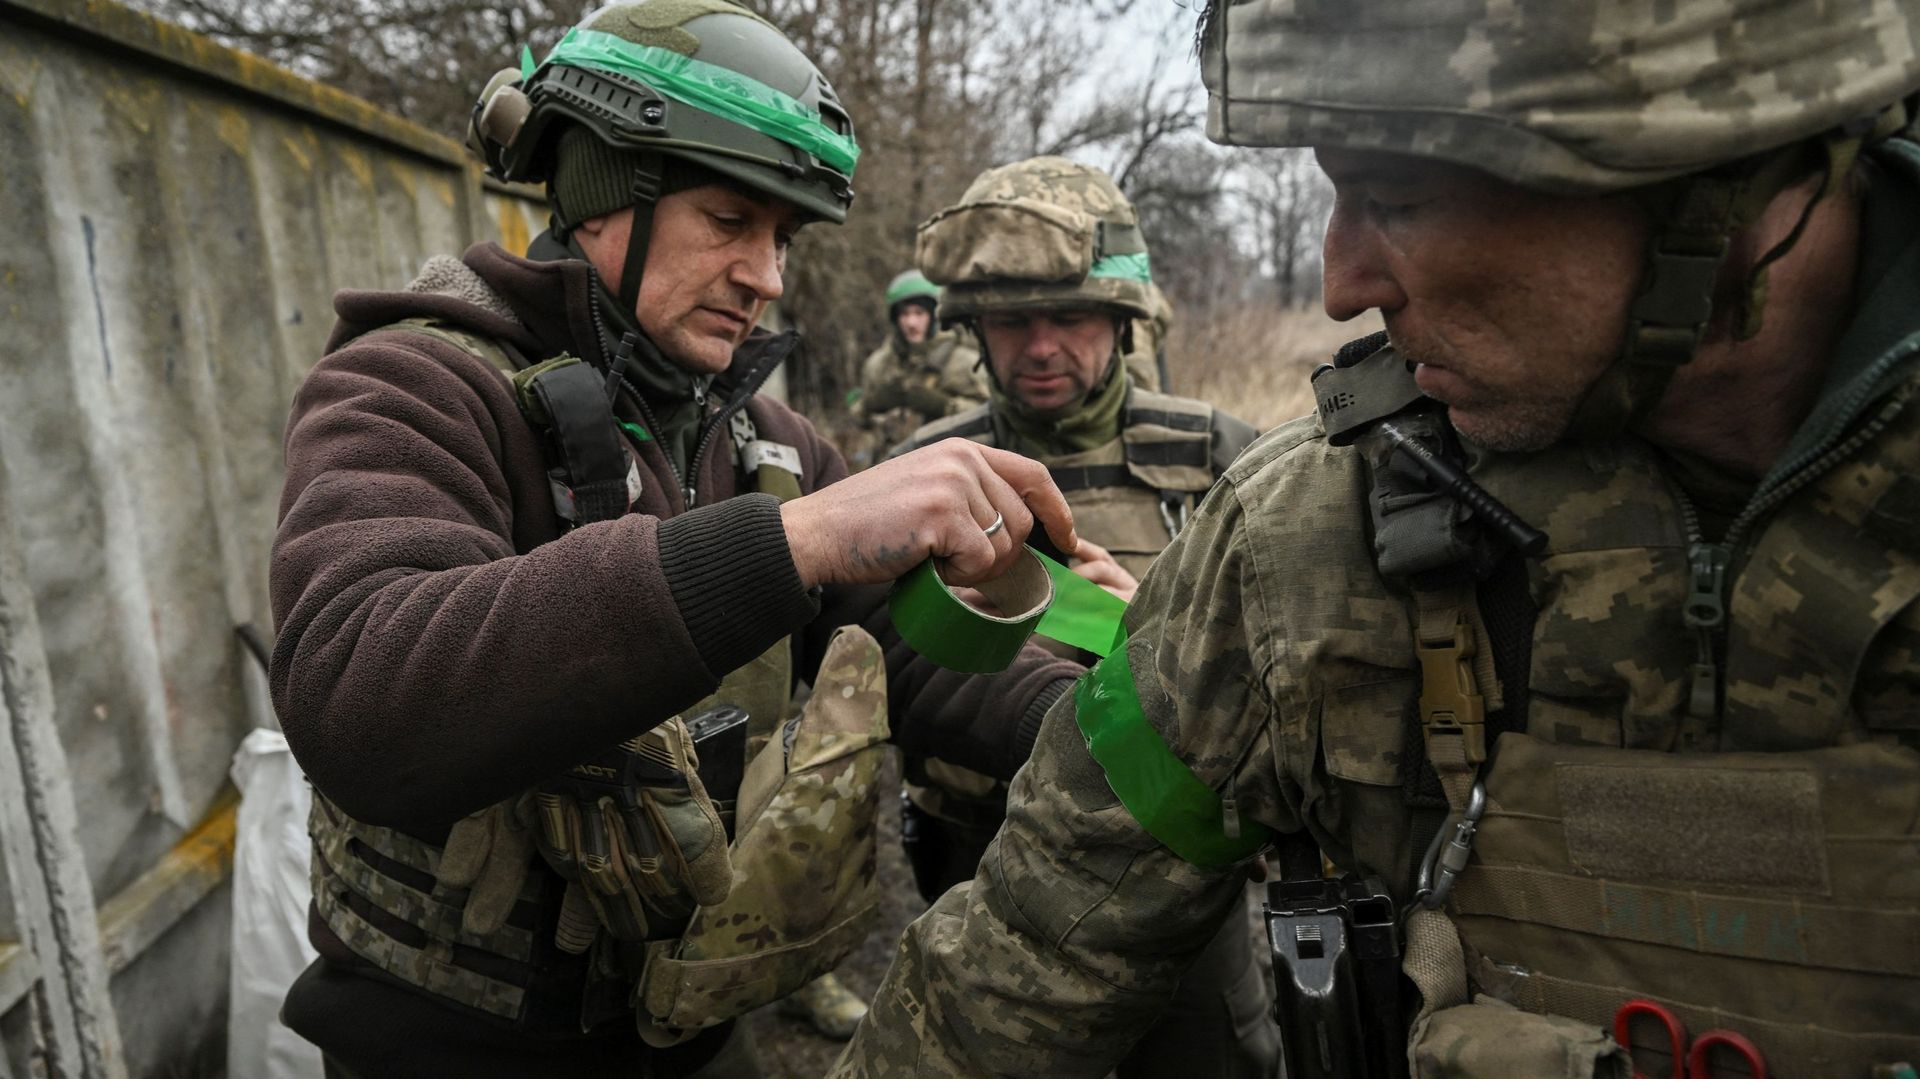 Des militaires ukrainiens se préparent à rejoindre la ligne de front près de la ville de Bakhmut, le 8 mars 2023, dans le cadre de l'invasion russe de l'Ukraine.